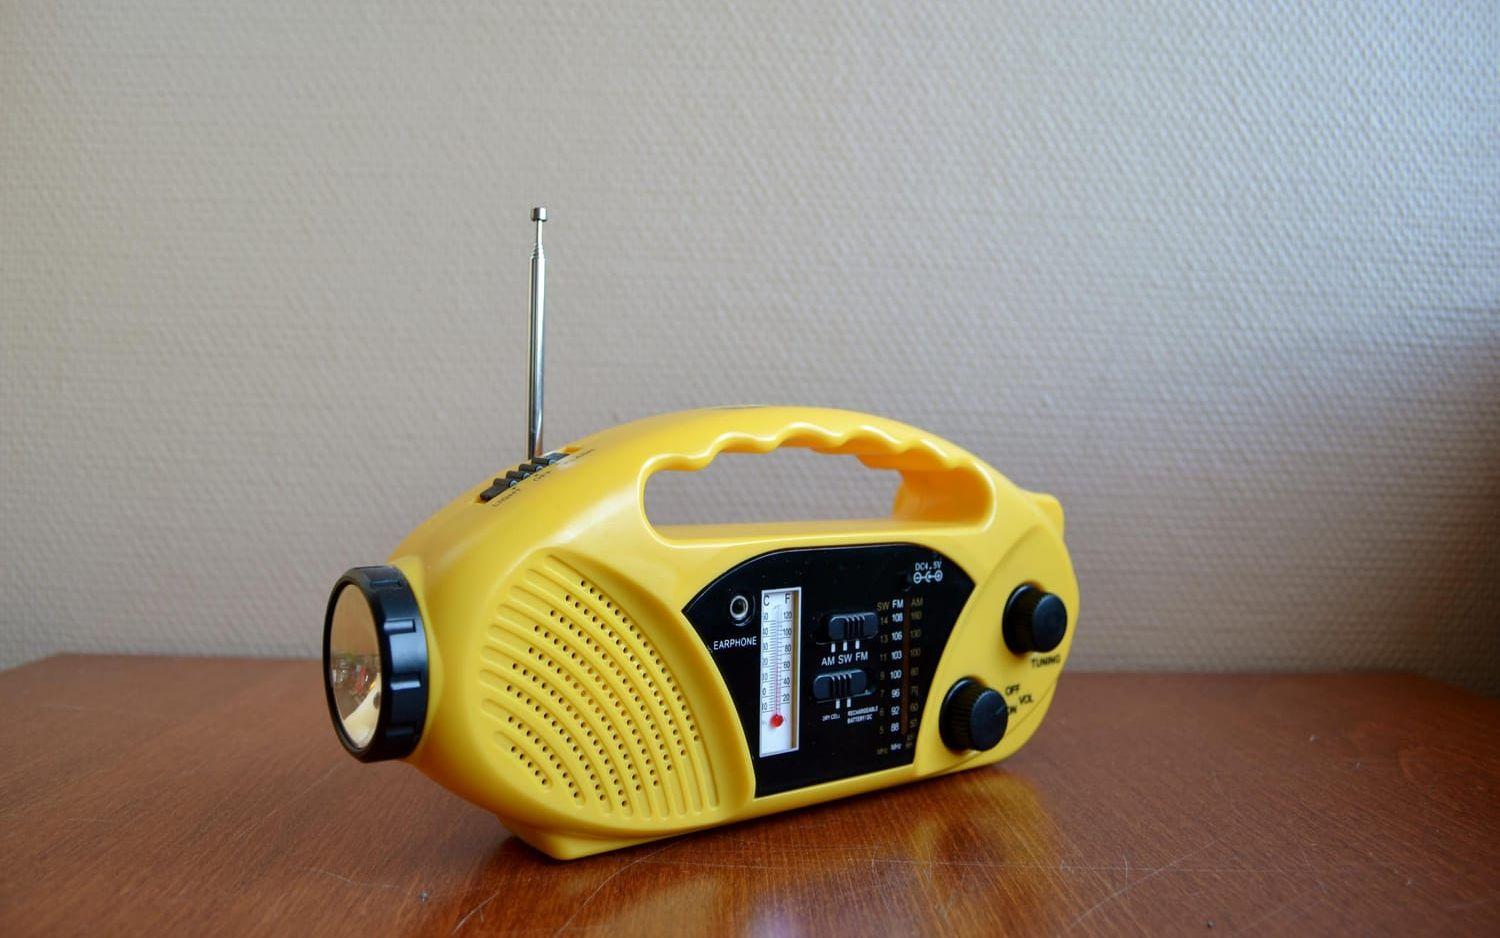 FIFFIG MACKAPÄR. Utan information om vad som händer blir man otrygg. Den sladdlösa radion kan drivas på batteri eller med hjälp av solcellerna eller veven. Den har en inbyggd ficklampa och uttag för att ladda mobilen. Med en sådan här radio är kommunikationen säkrad.